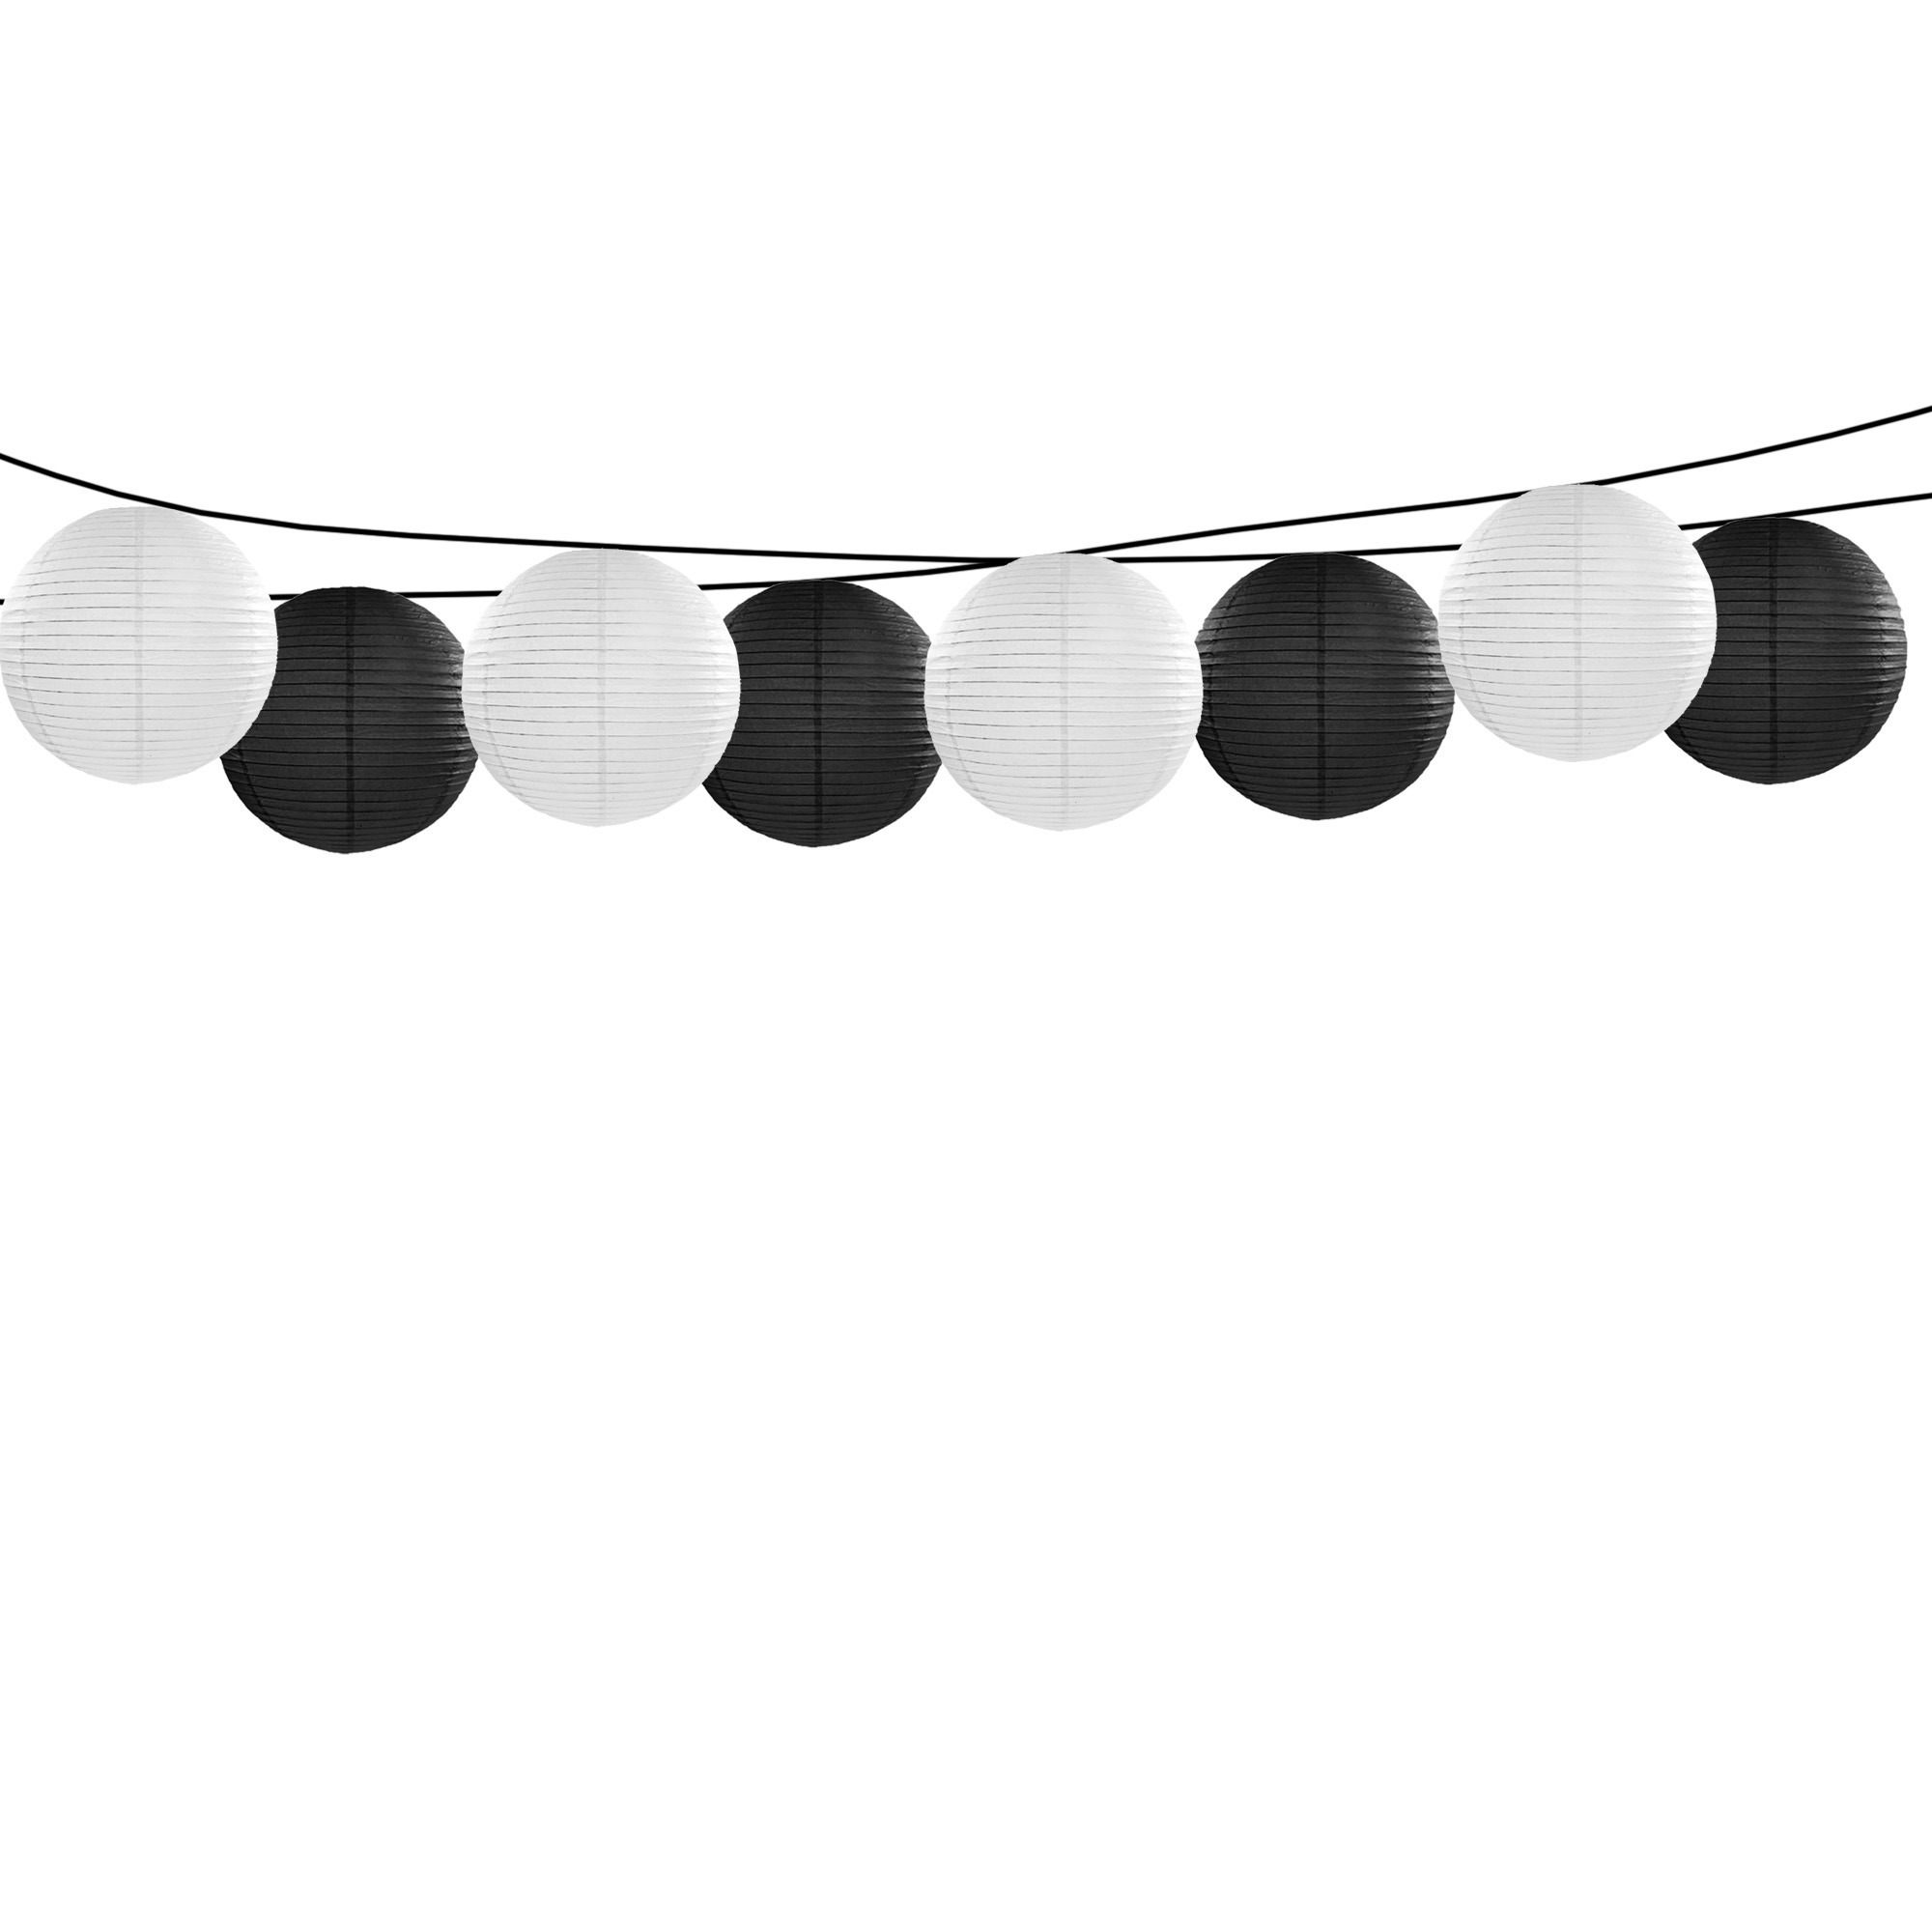 Feest-tuin versiering 8x stuks luxe bol-vorm lampionnen zwart en wit dia 35 cm